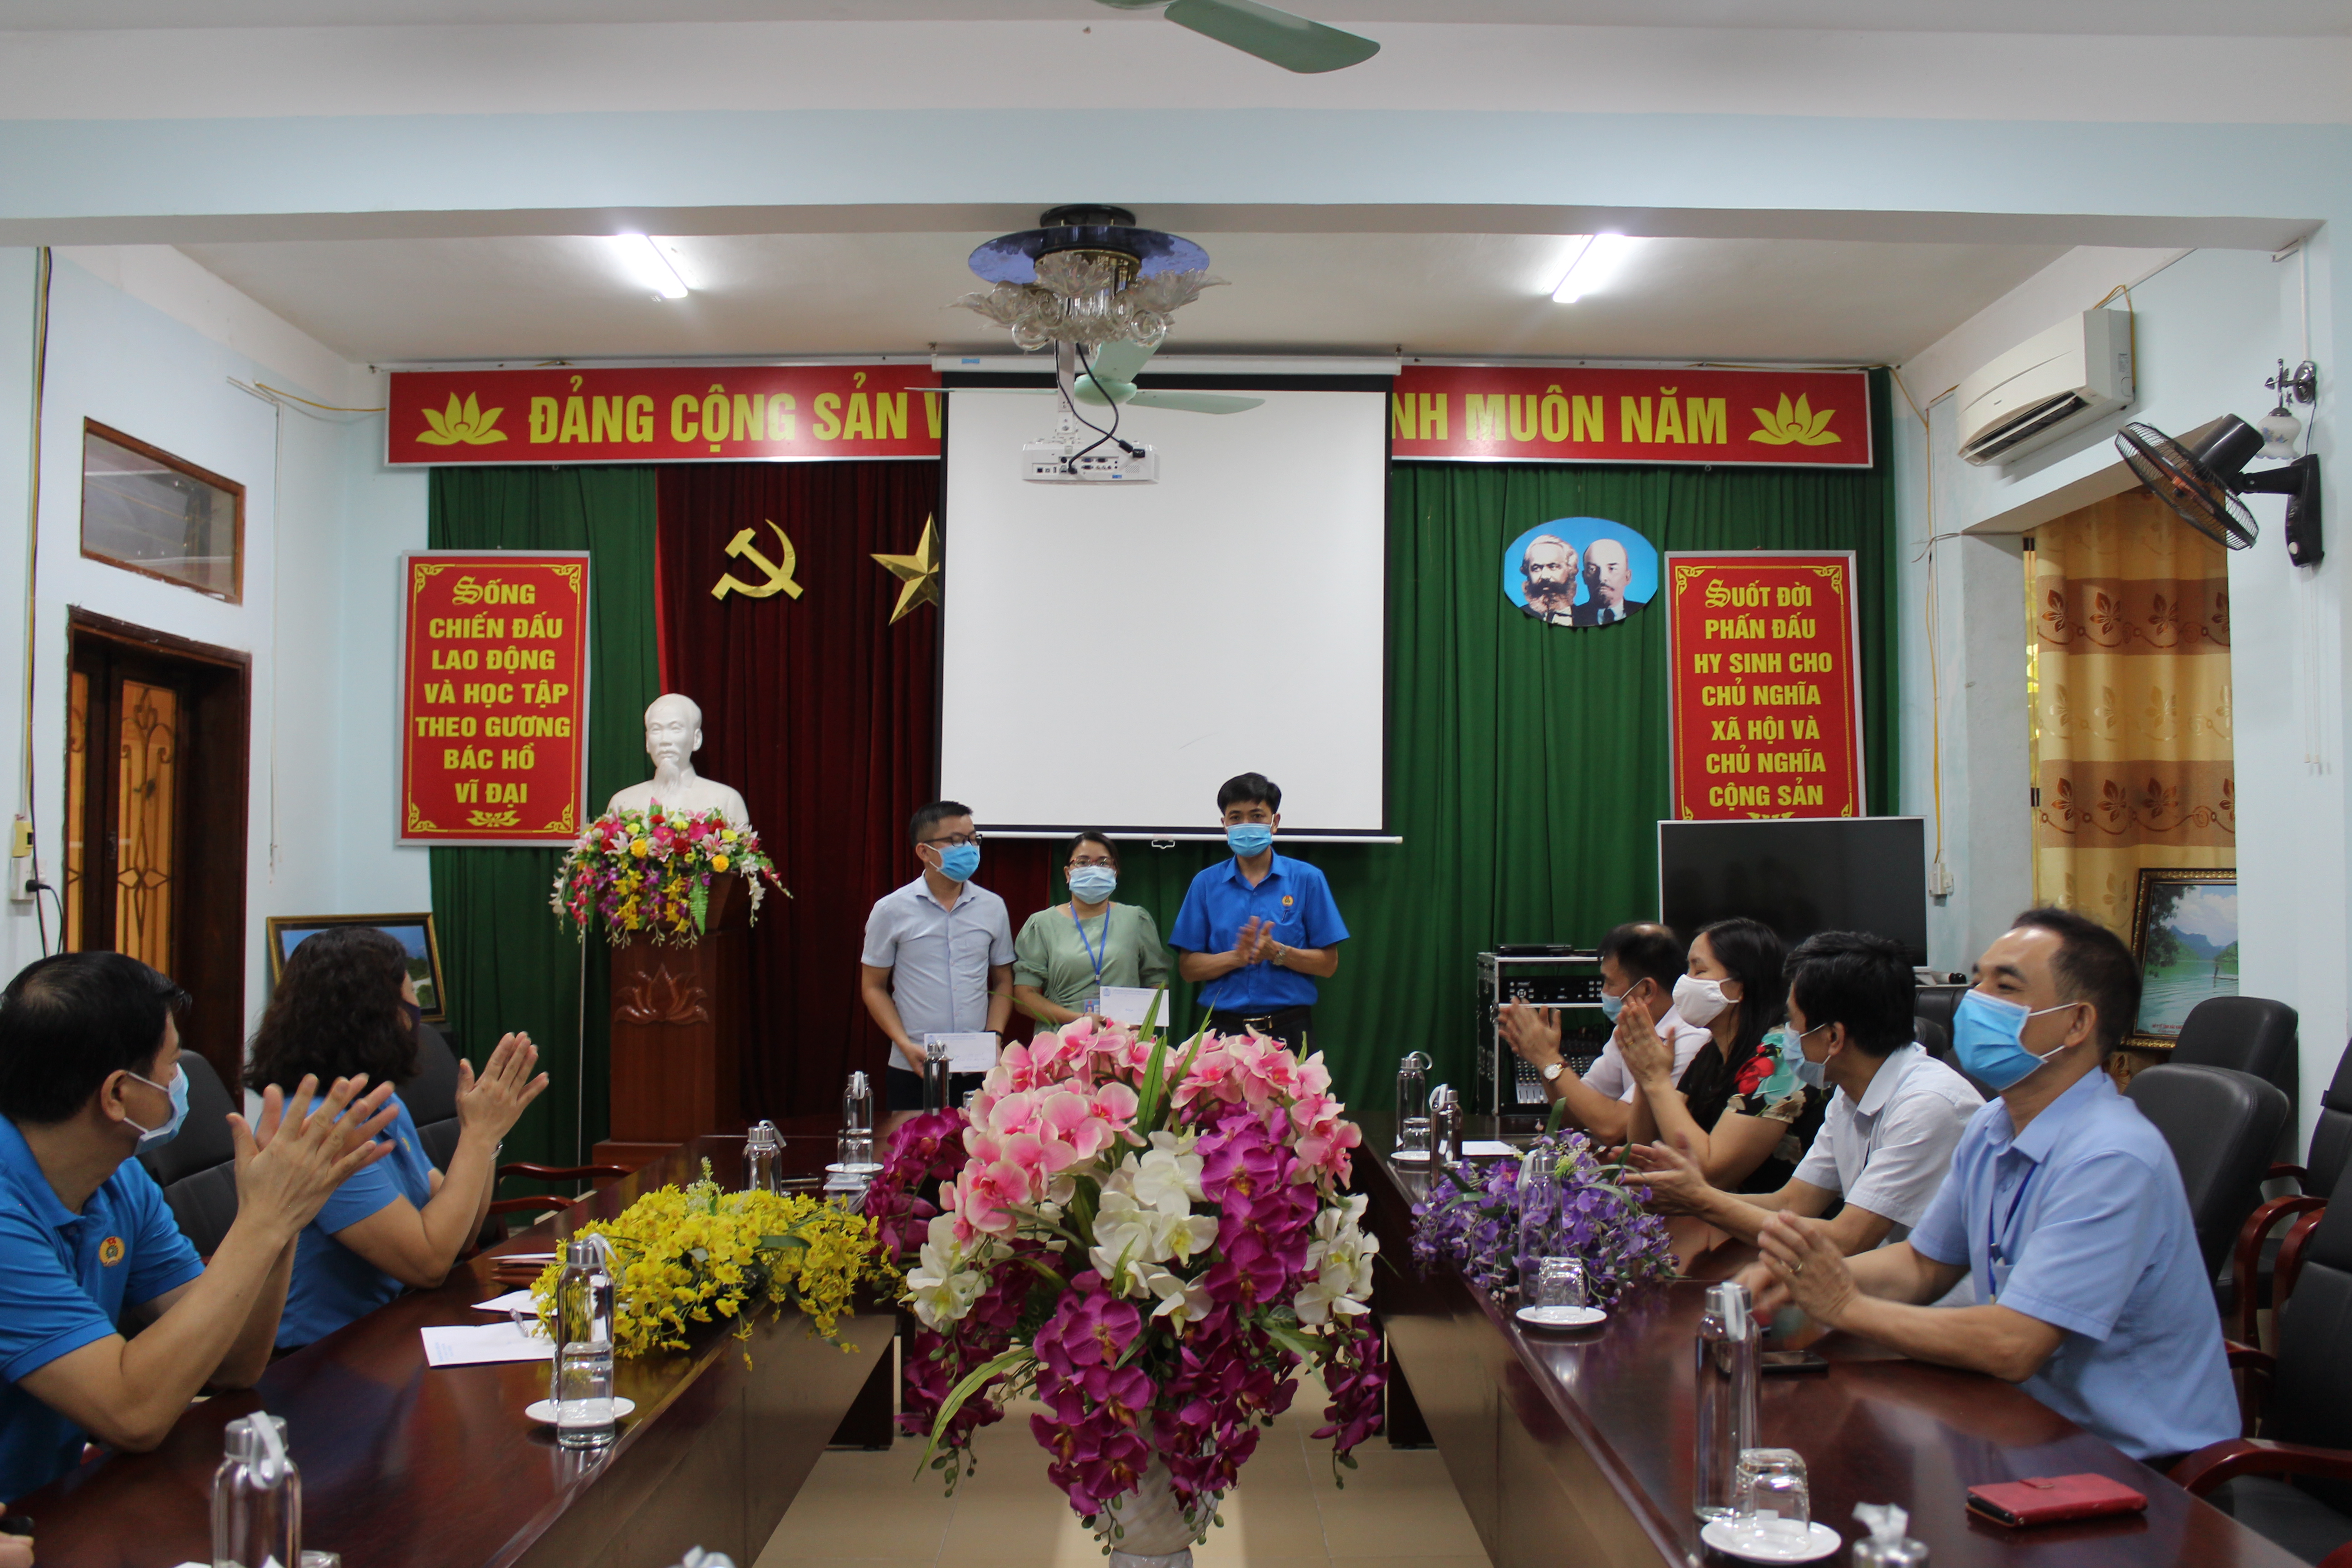 Đồng chí Trần Văn Minh- Phó Chủ tịch Liên đoàn Lao động tỉnh trao quà cho đoàn viên bị ảnh hưởng bởi dịch COVID-19